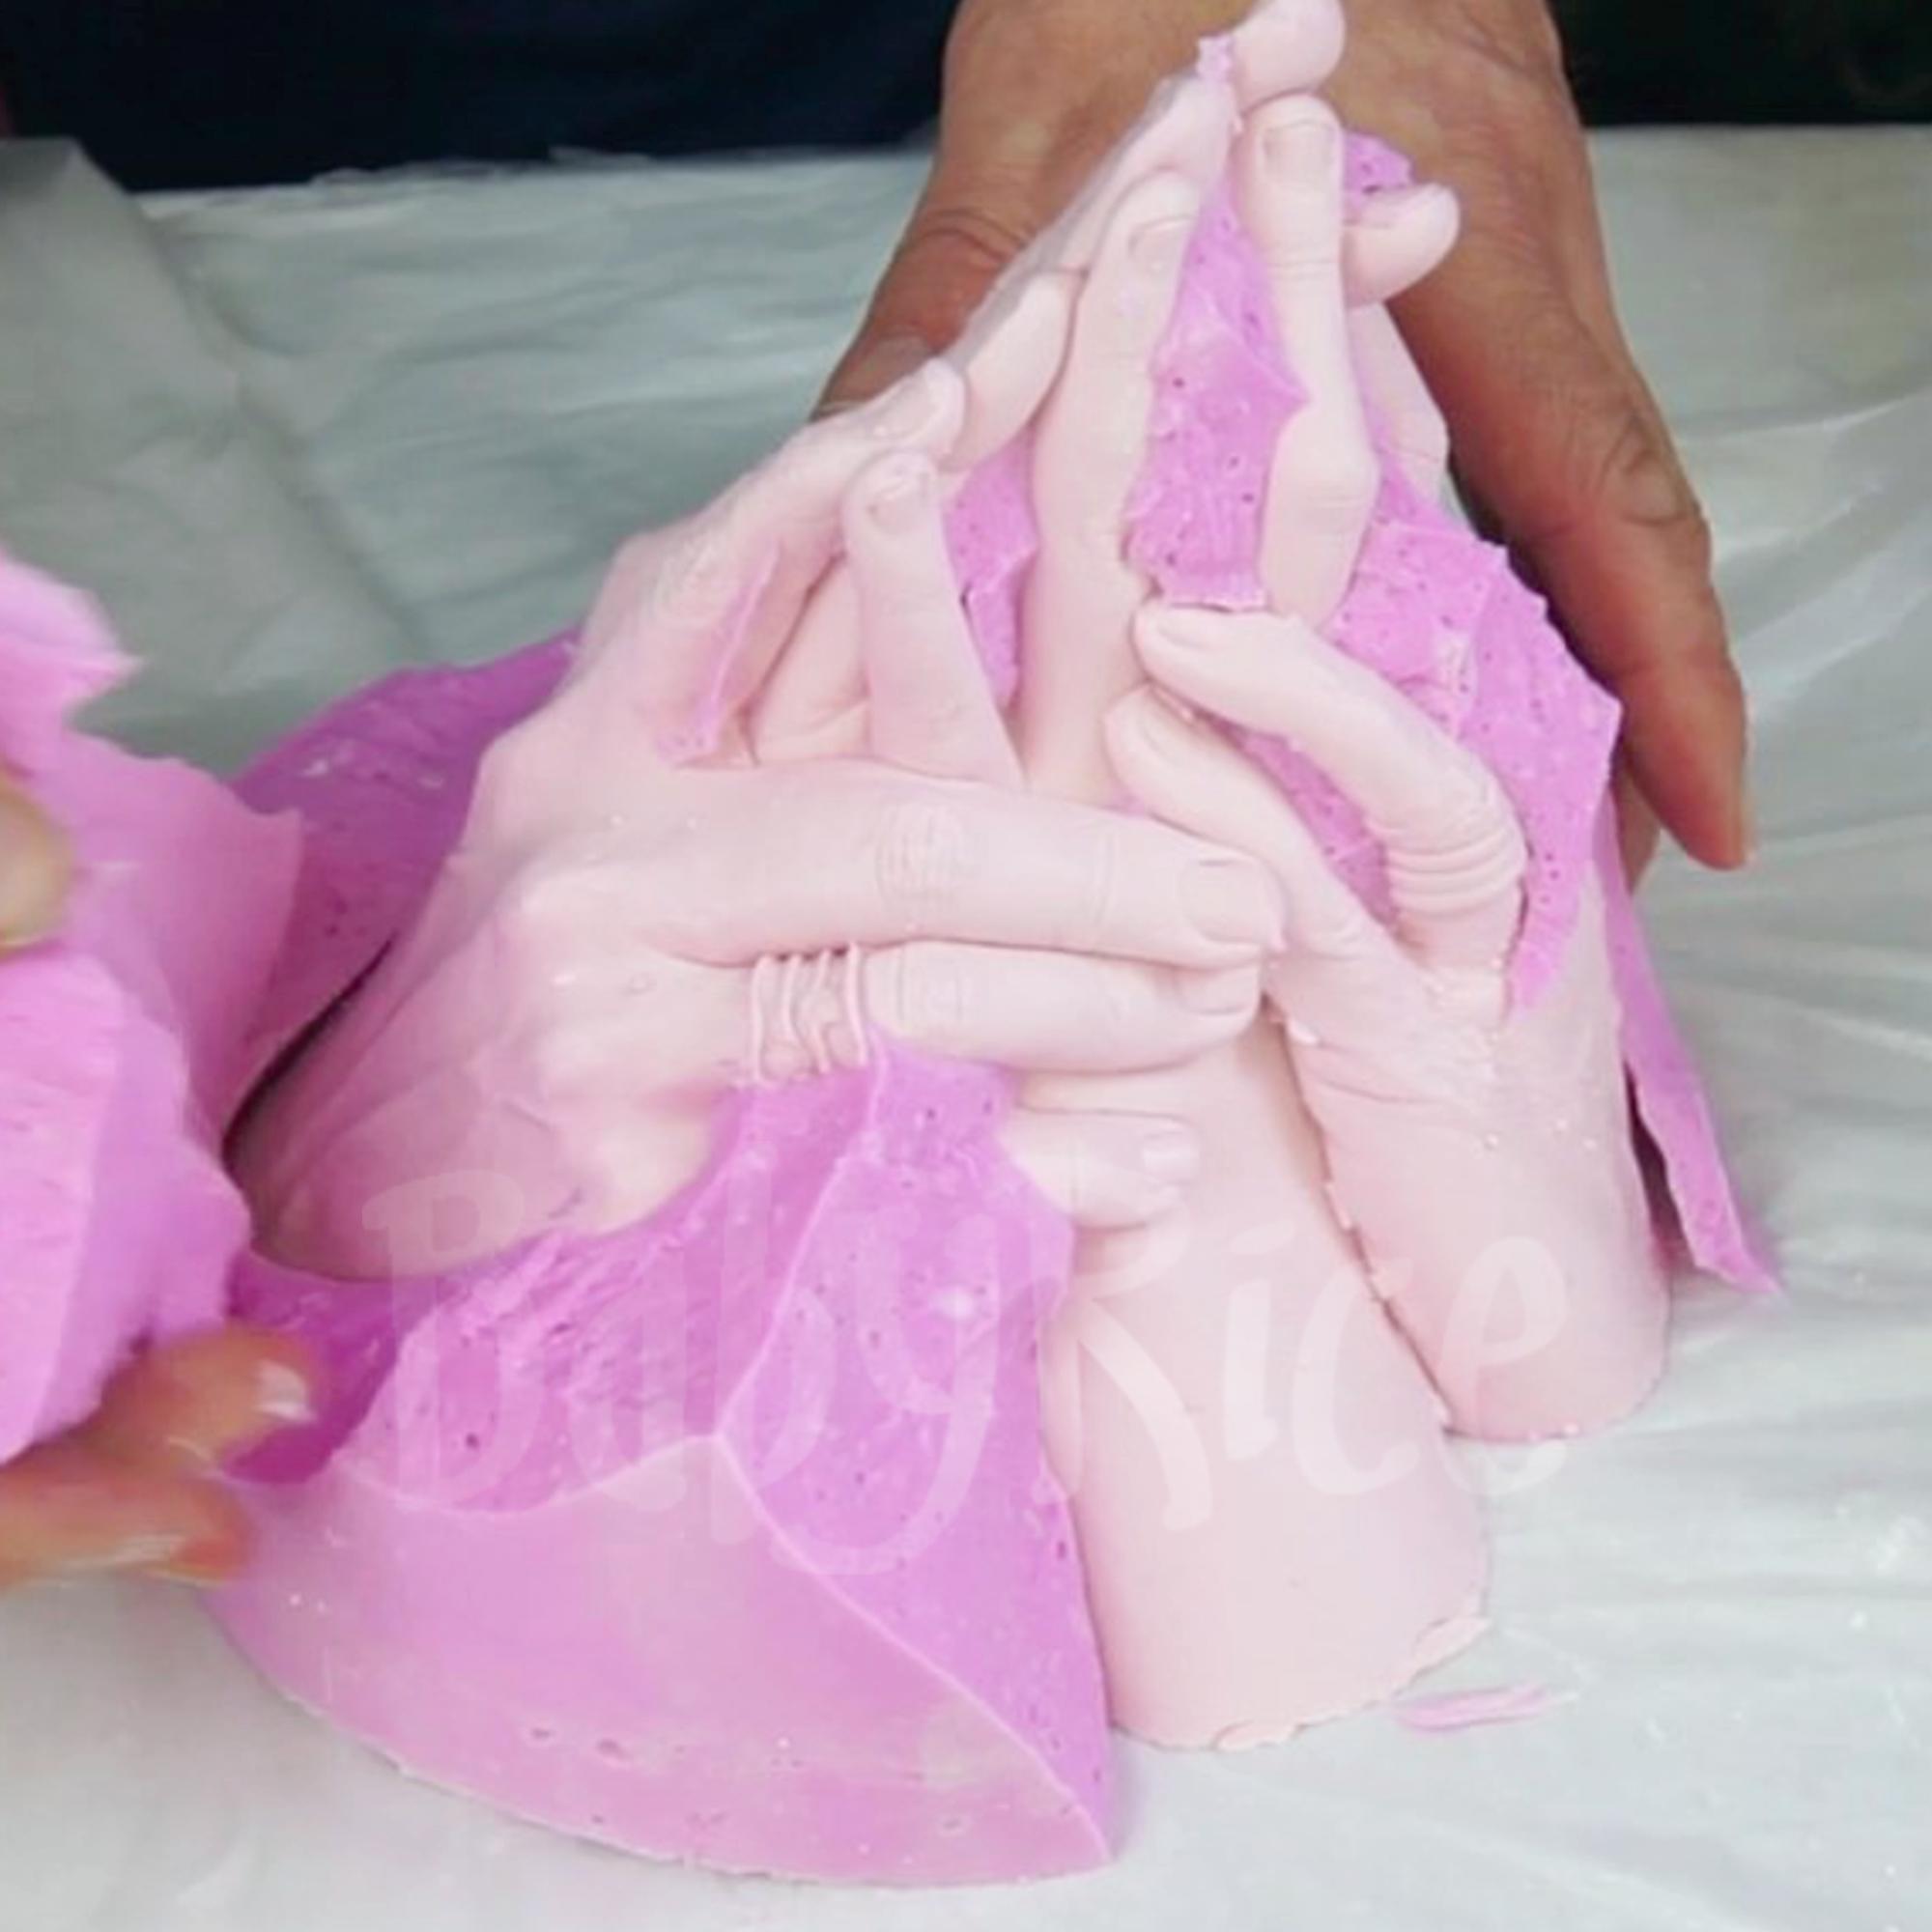 How to make a hand cast Remove alginate, hand plaster cast